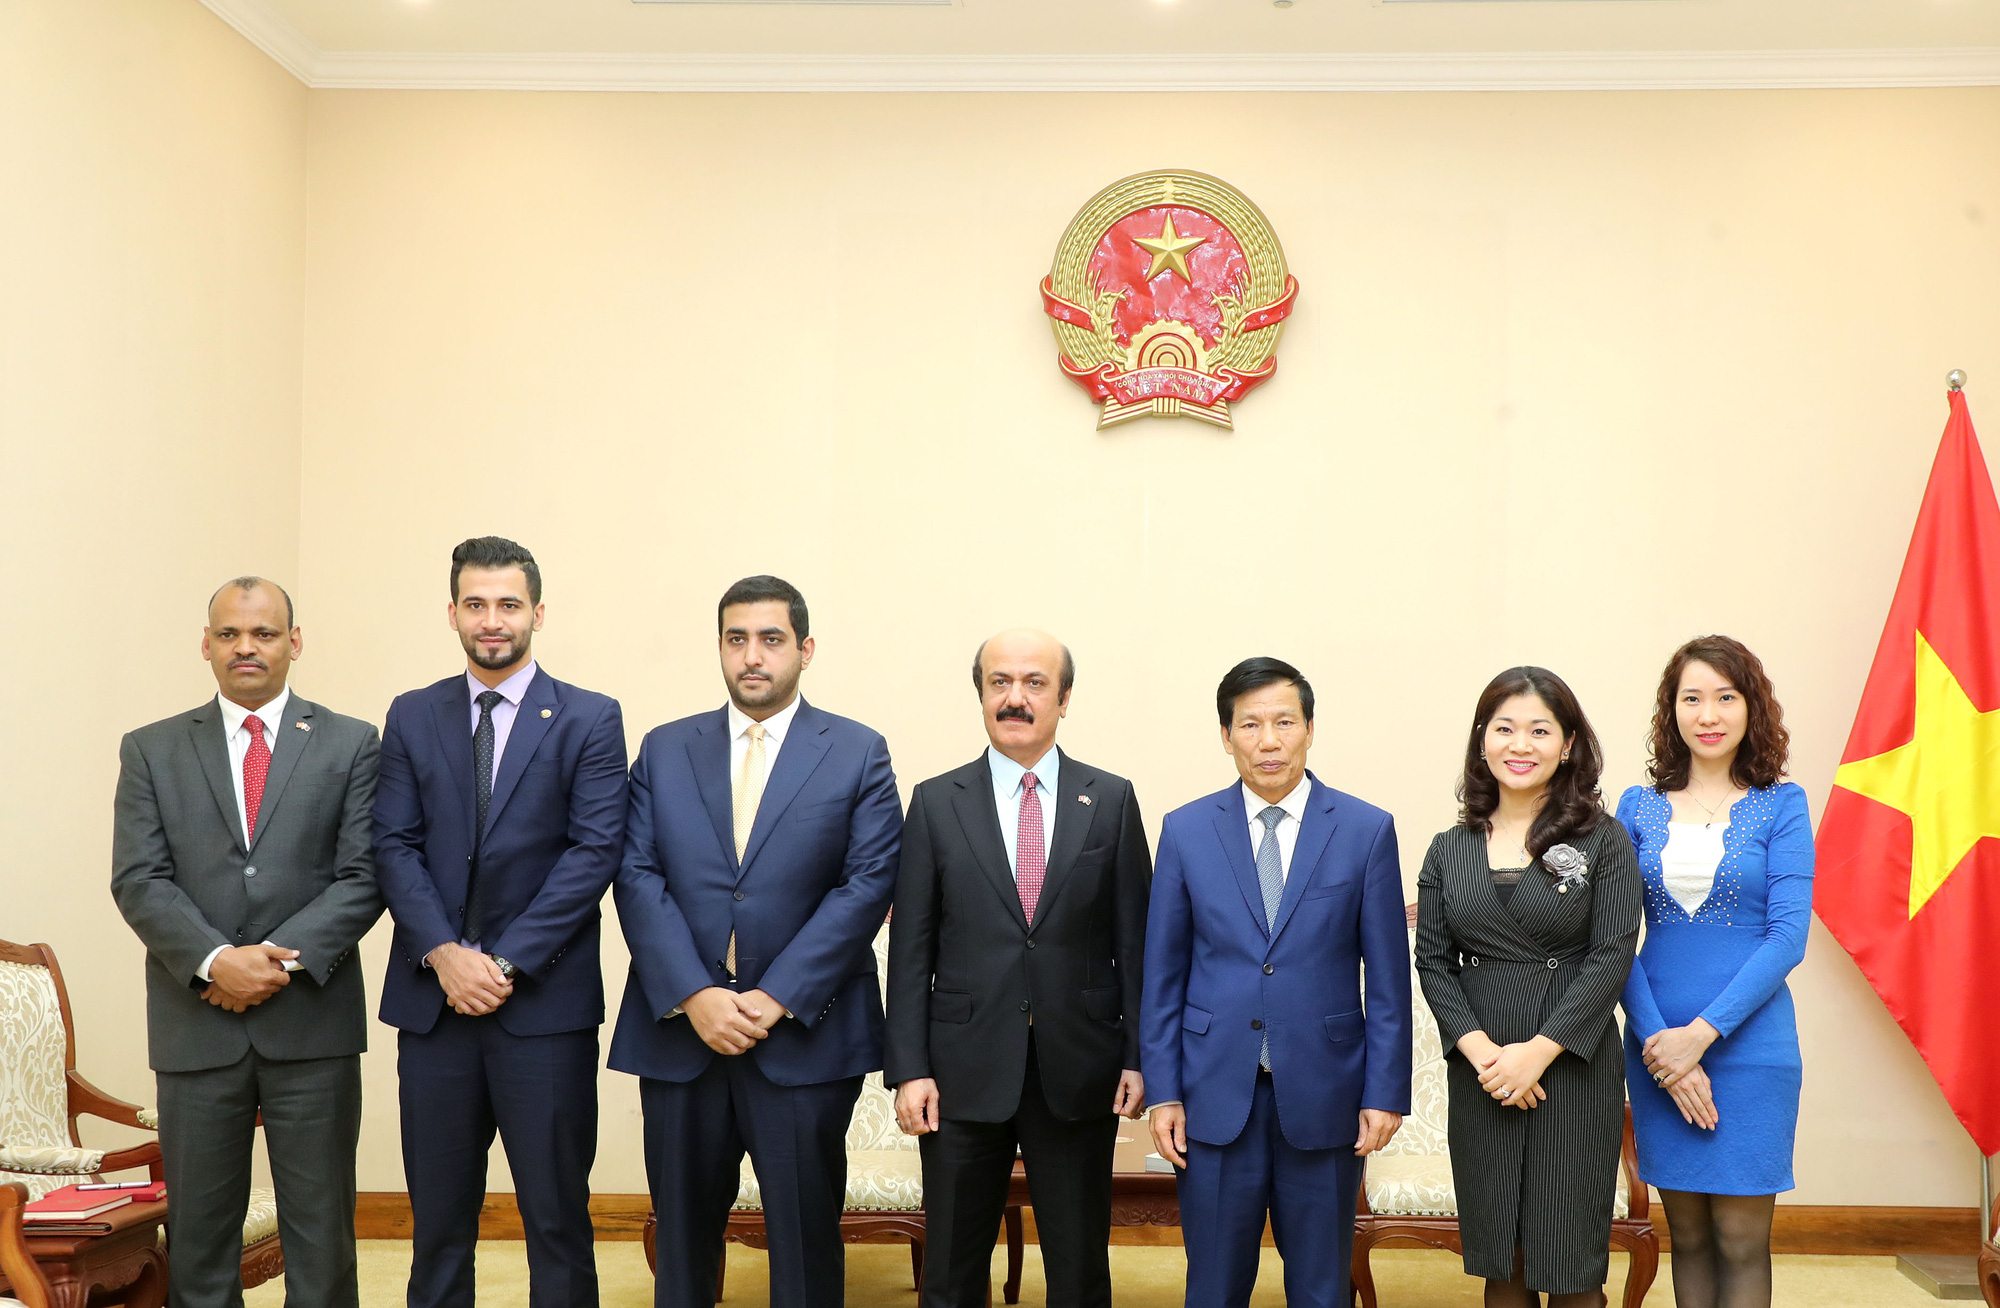 Bộ trưởng Nguyễn Ngọc Thiện tiếp Đại sứ Qatar đến chào xã giao - Ảnh 2.